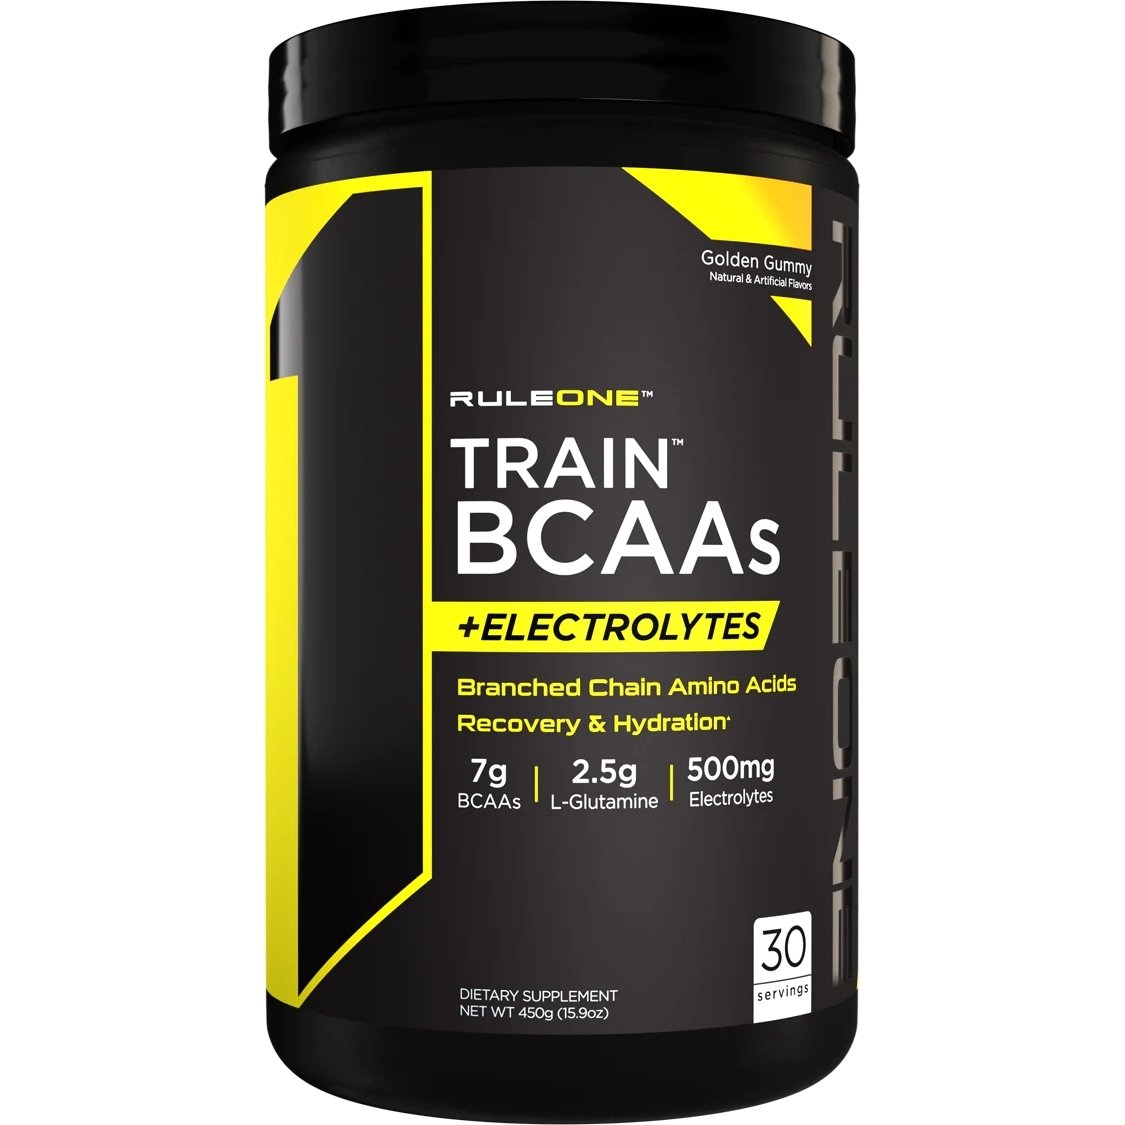 Аминокислота BCAA Rule 1 Train BCAAs + Electrolytes, 450 грамм Желейные конфеты,  мл, Rule One Proteins. BCAA. Снижение веса Восстановление Антикатаболические свойства Сухая мышечная масса 